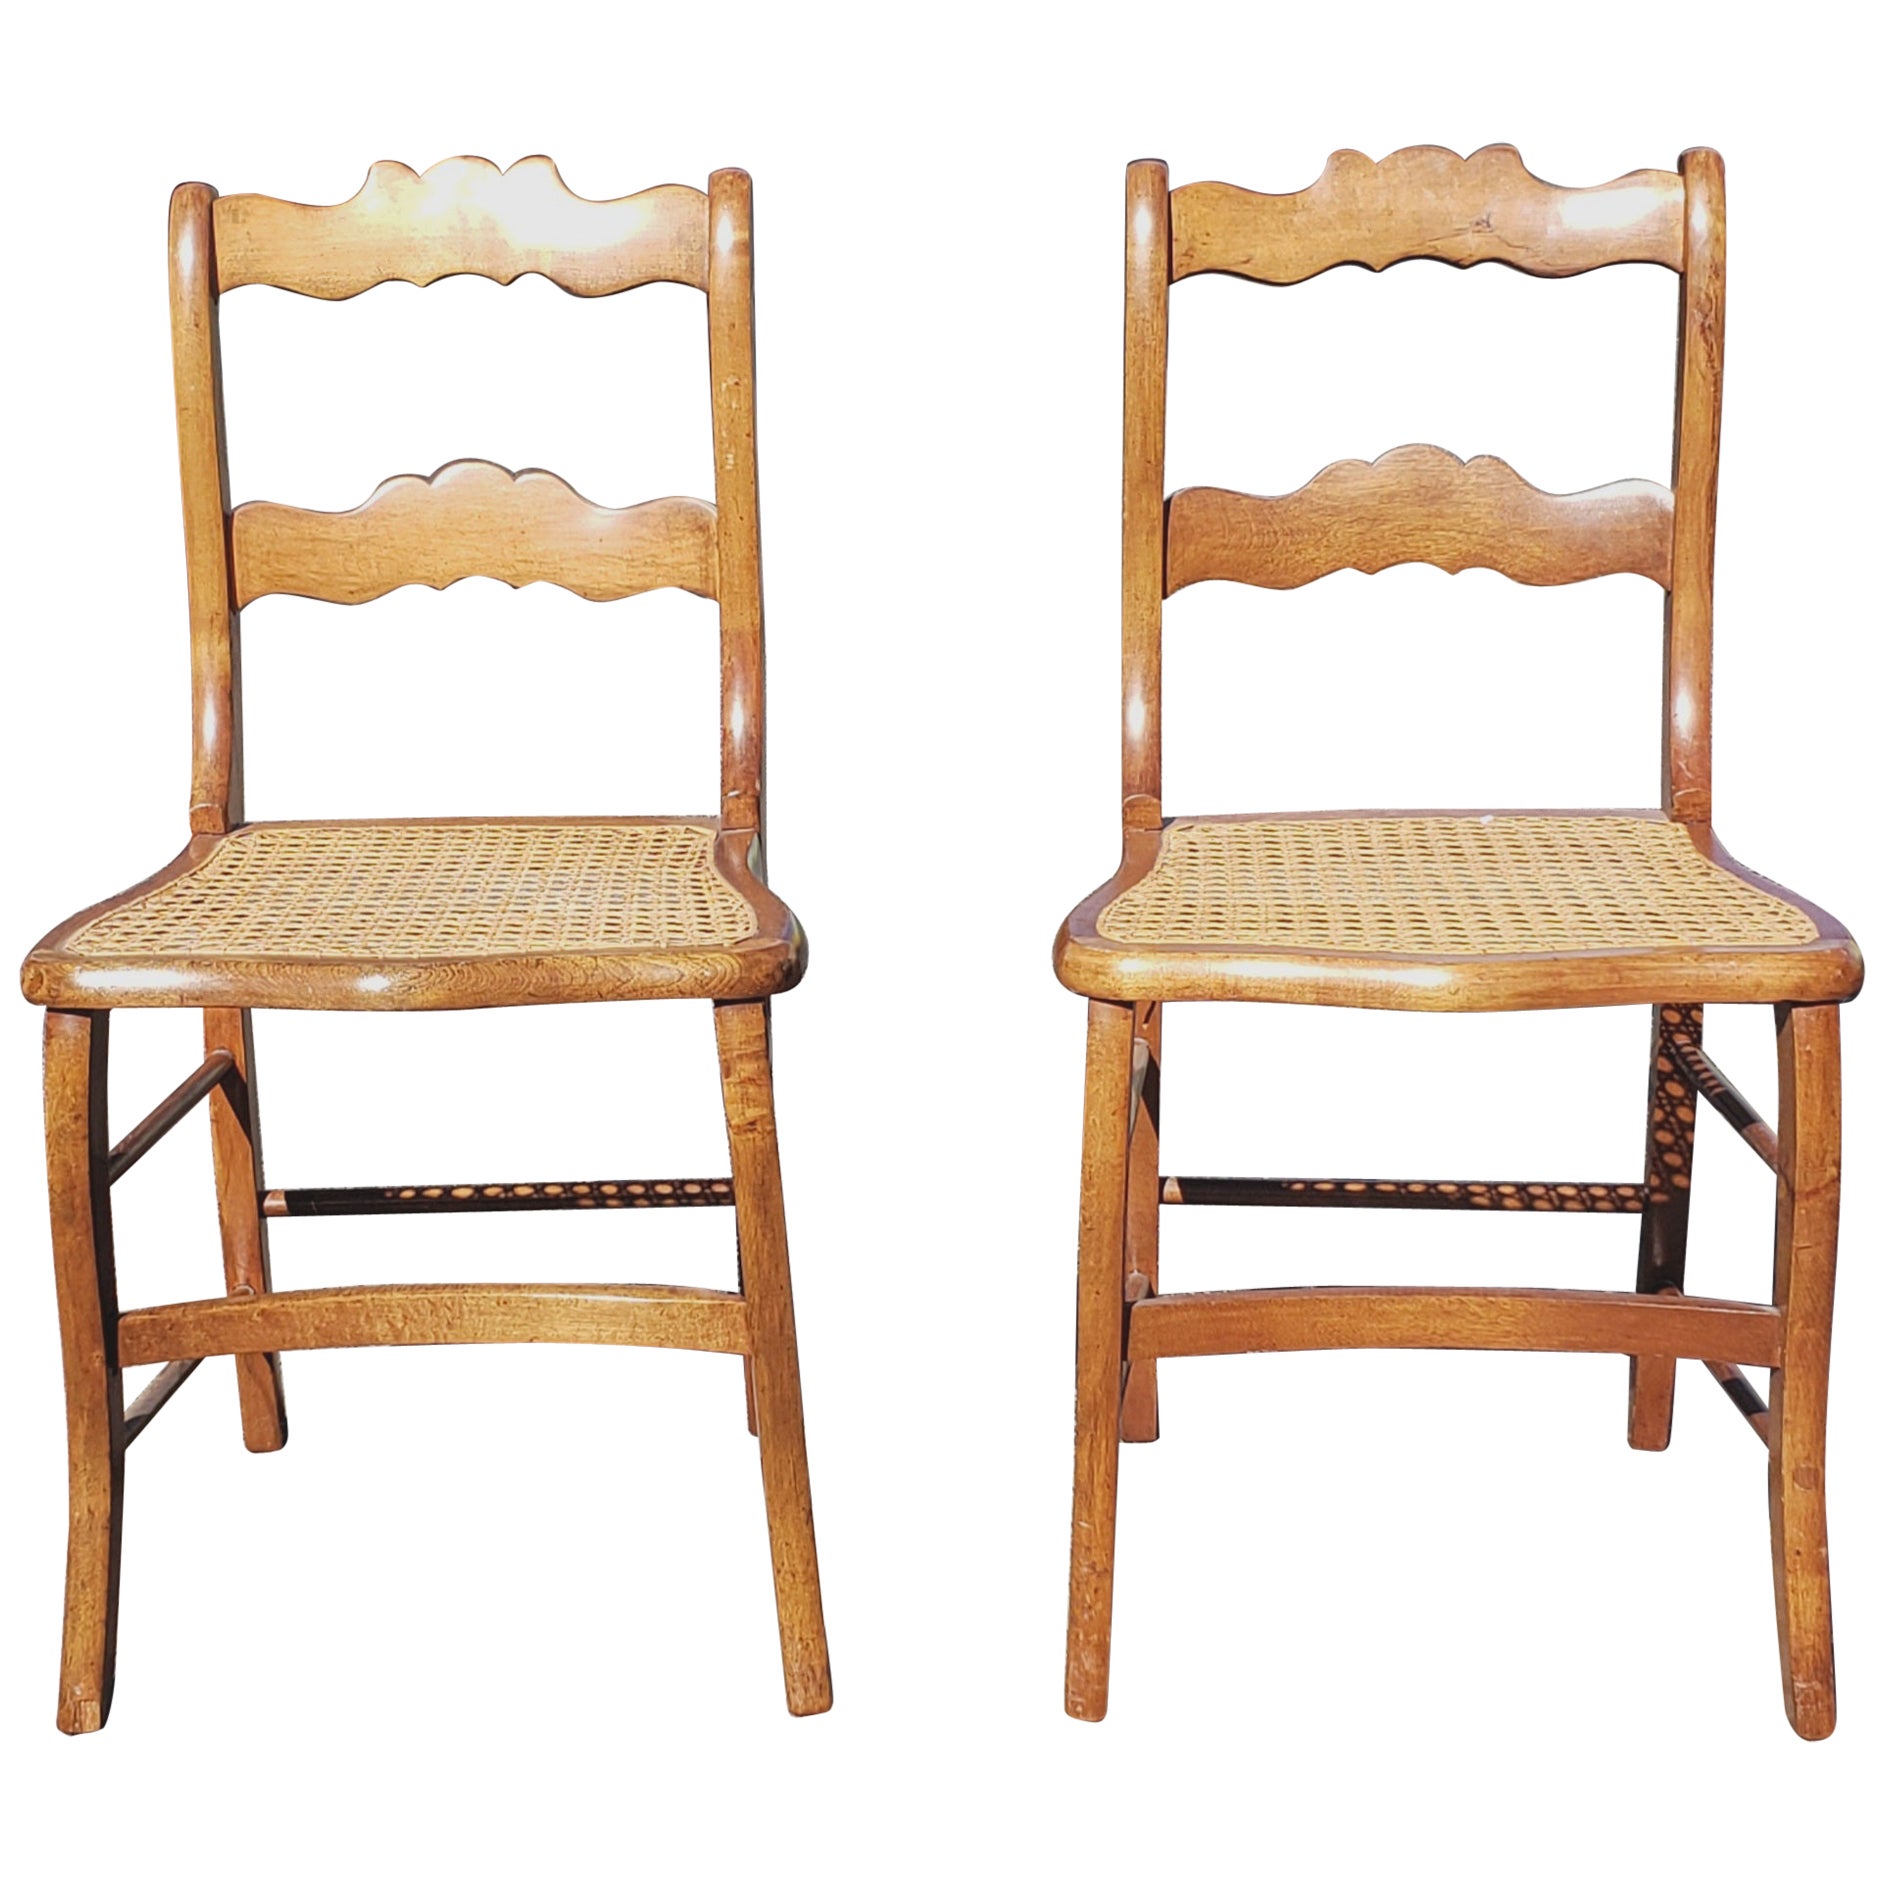 Frühe amerikanische Sitzstühle aus Ahornholz und Schilfrohr mit Leiterrückenlehne, ein Paar, um 1880